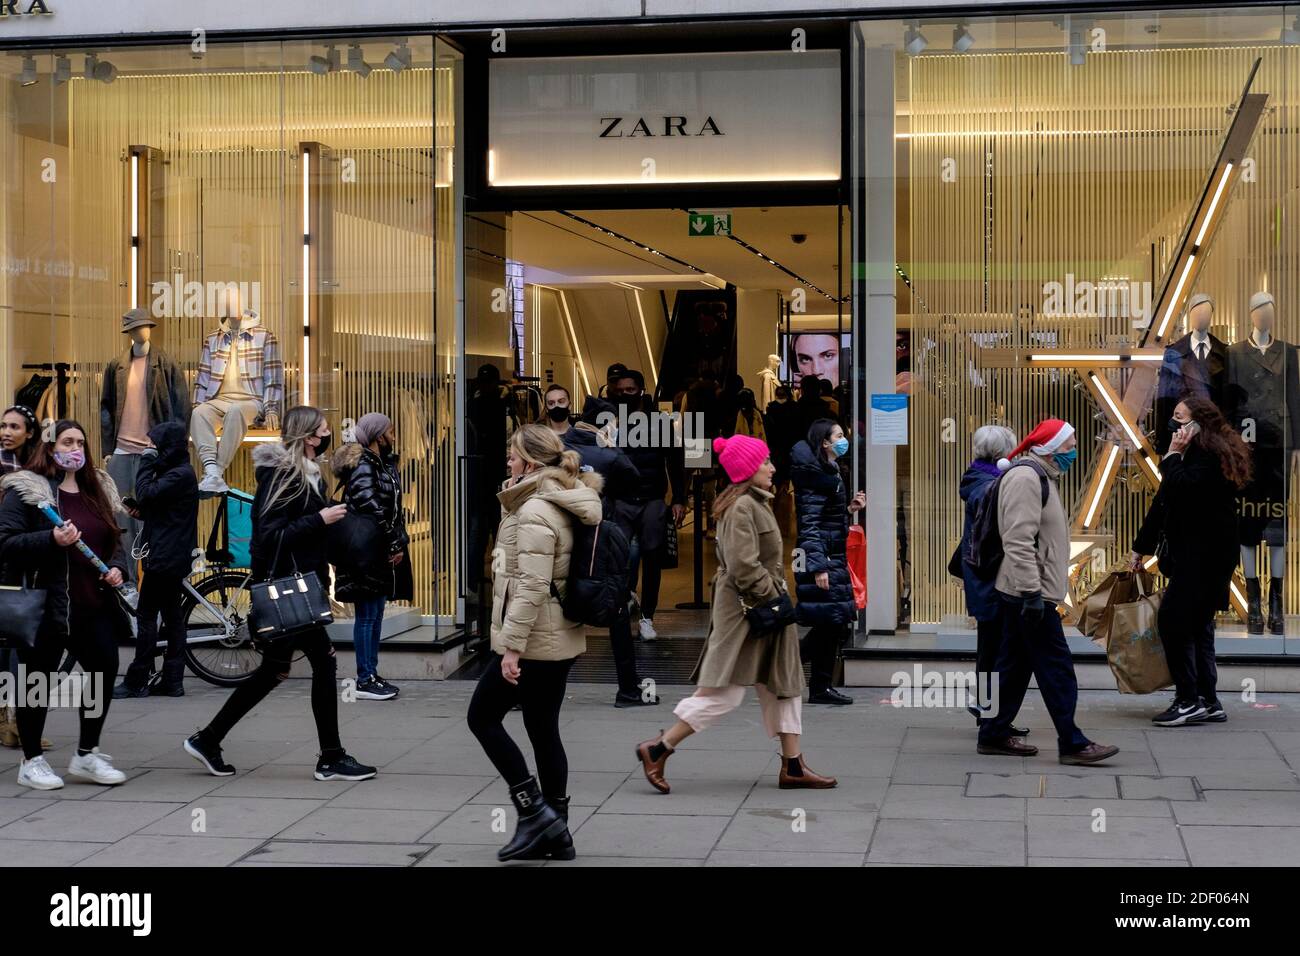 Zara shop london immagini e fotografie stock ad alta risoluzione - Alamy